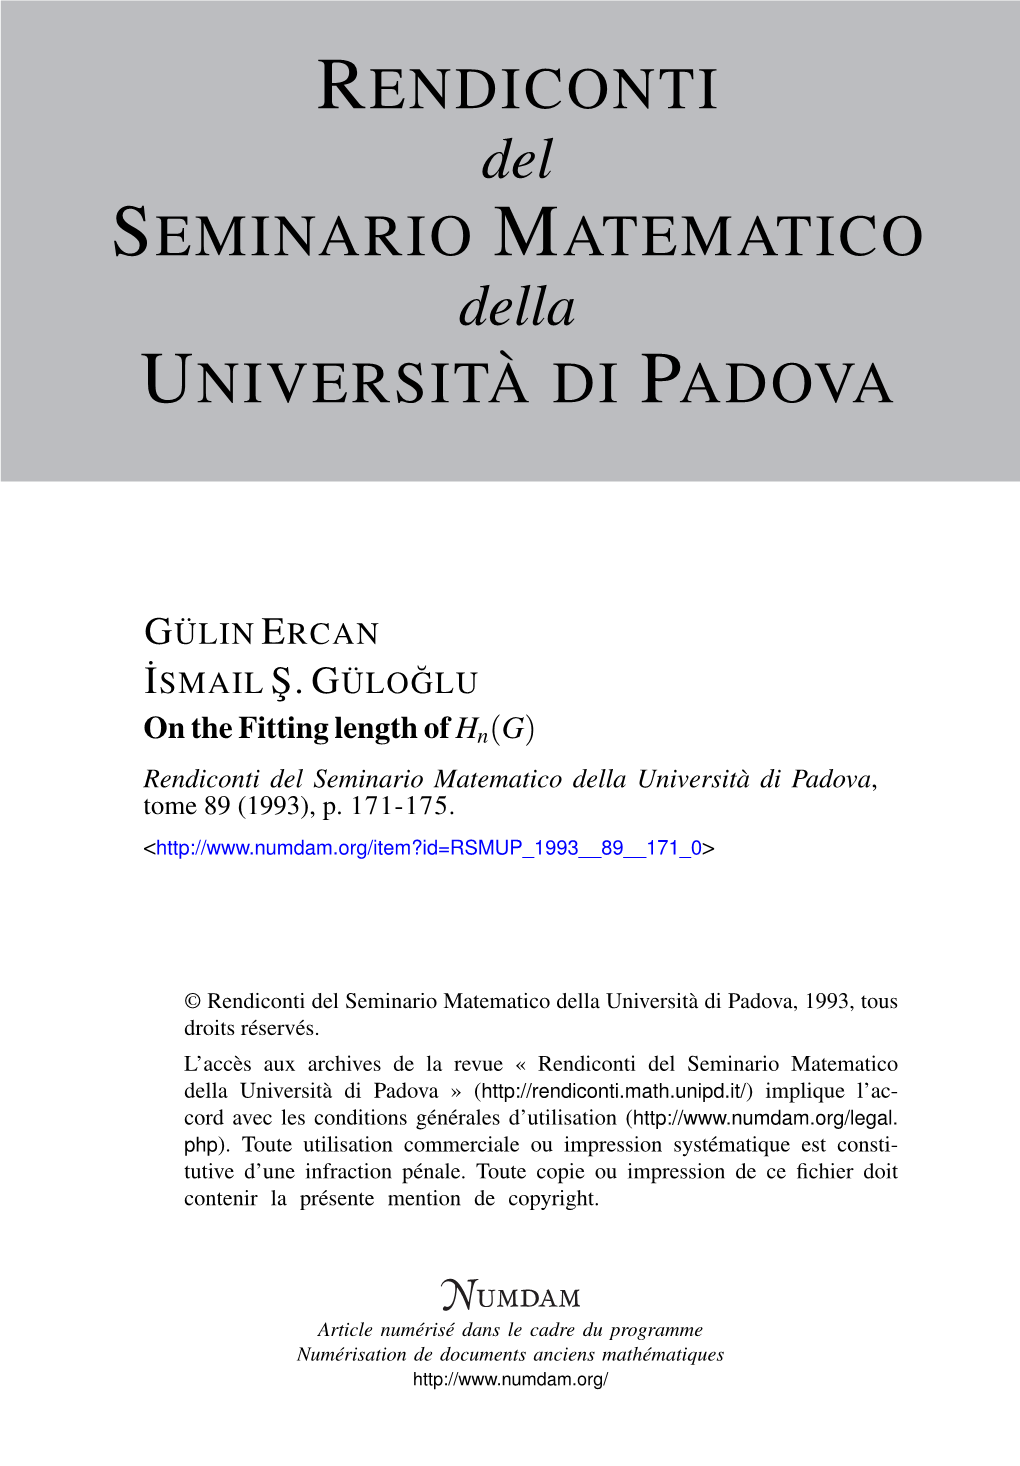 On the Fitting Length of Hn(G) Rendiconti Del Seminario Matematico Della Università Di Padova, Tome 89 (1993), P